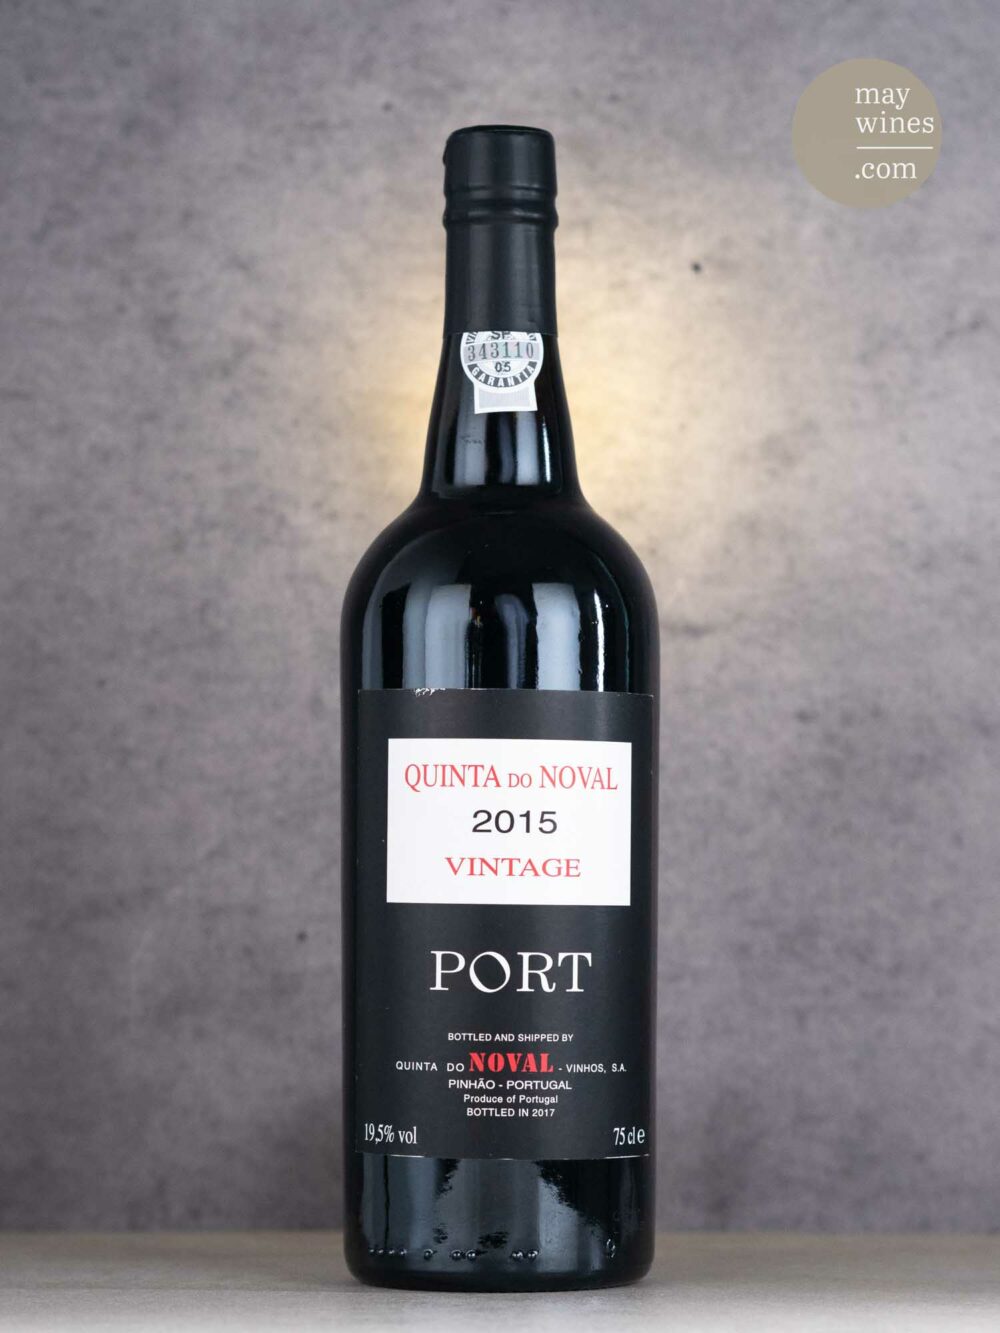 May Wines – Portwein – 2015 Vintage Port - Quinta do Noval